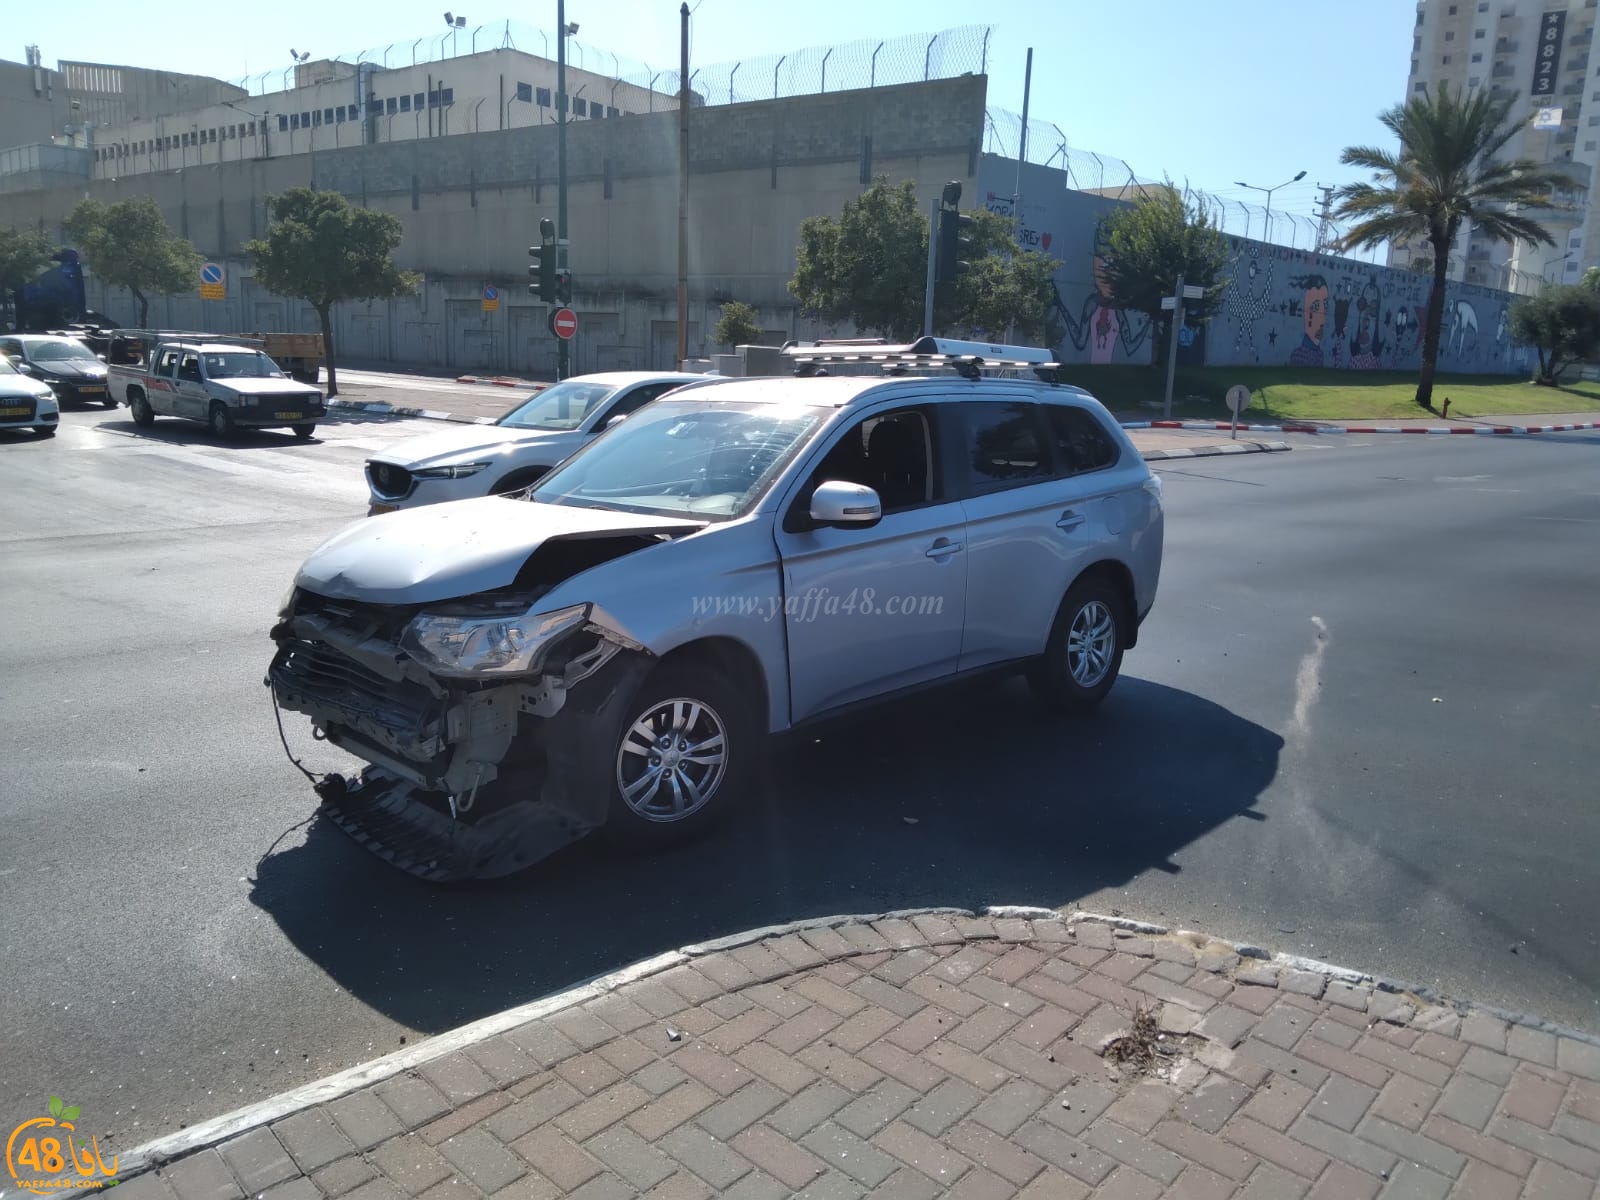 يافا: حادث طرق بين مركبتين بيافا يُسفر عن اصابة طفيفة